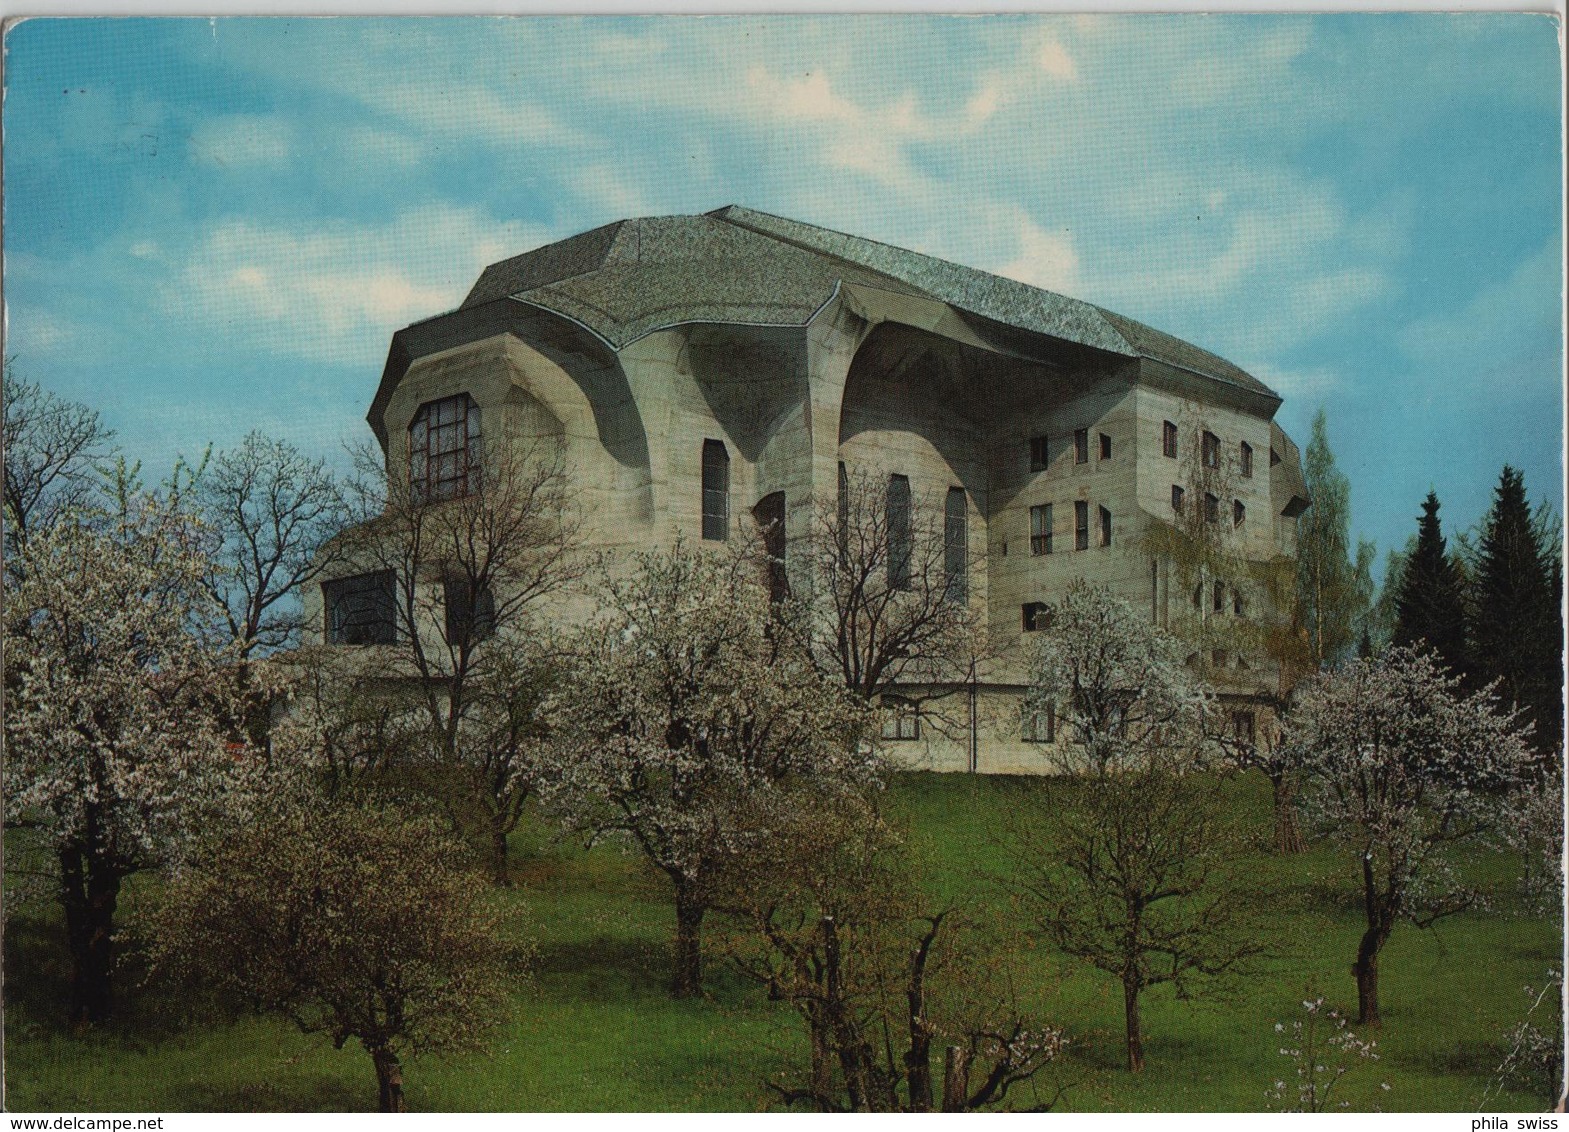 Goetheanum Freie Hochschule Für Geisteswissenschaft - Dornach - Dornach